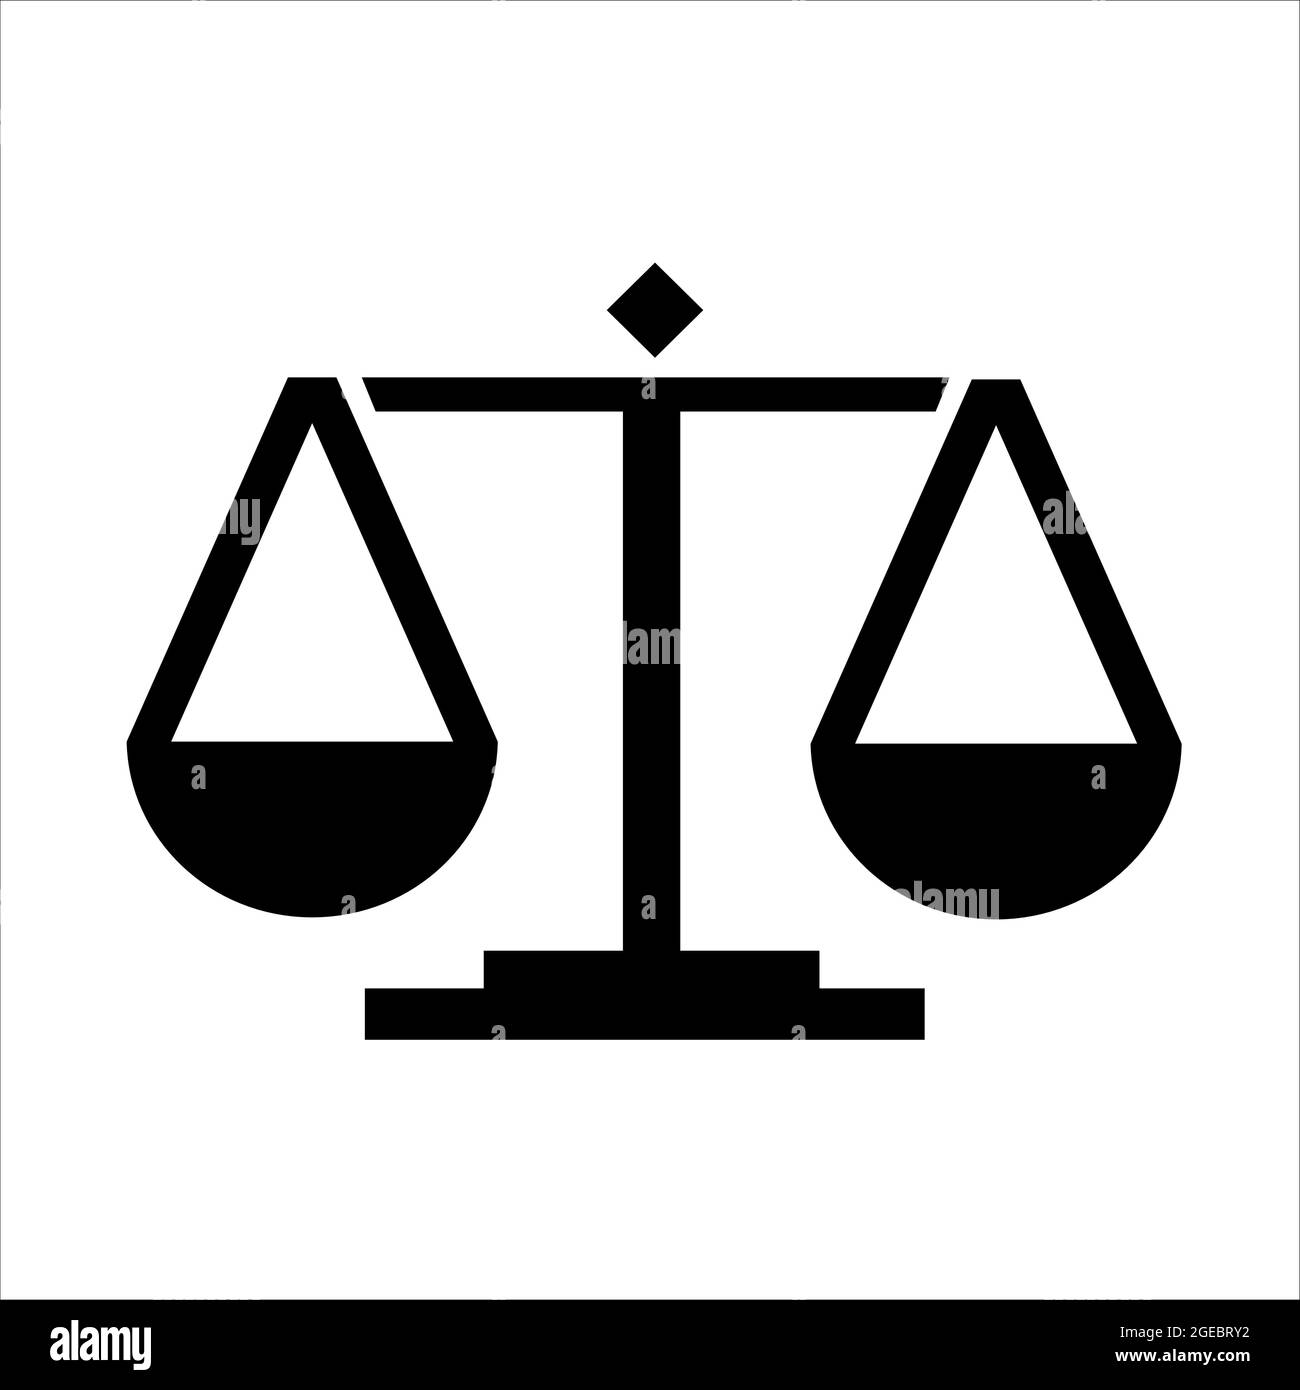 giustizia bilancia notaio avvocato logo Immagine e Vettoriale - Alamy